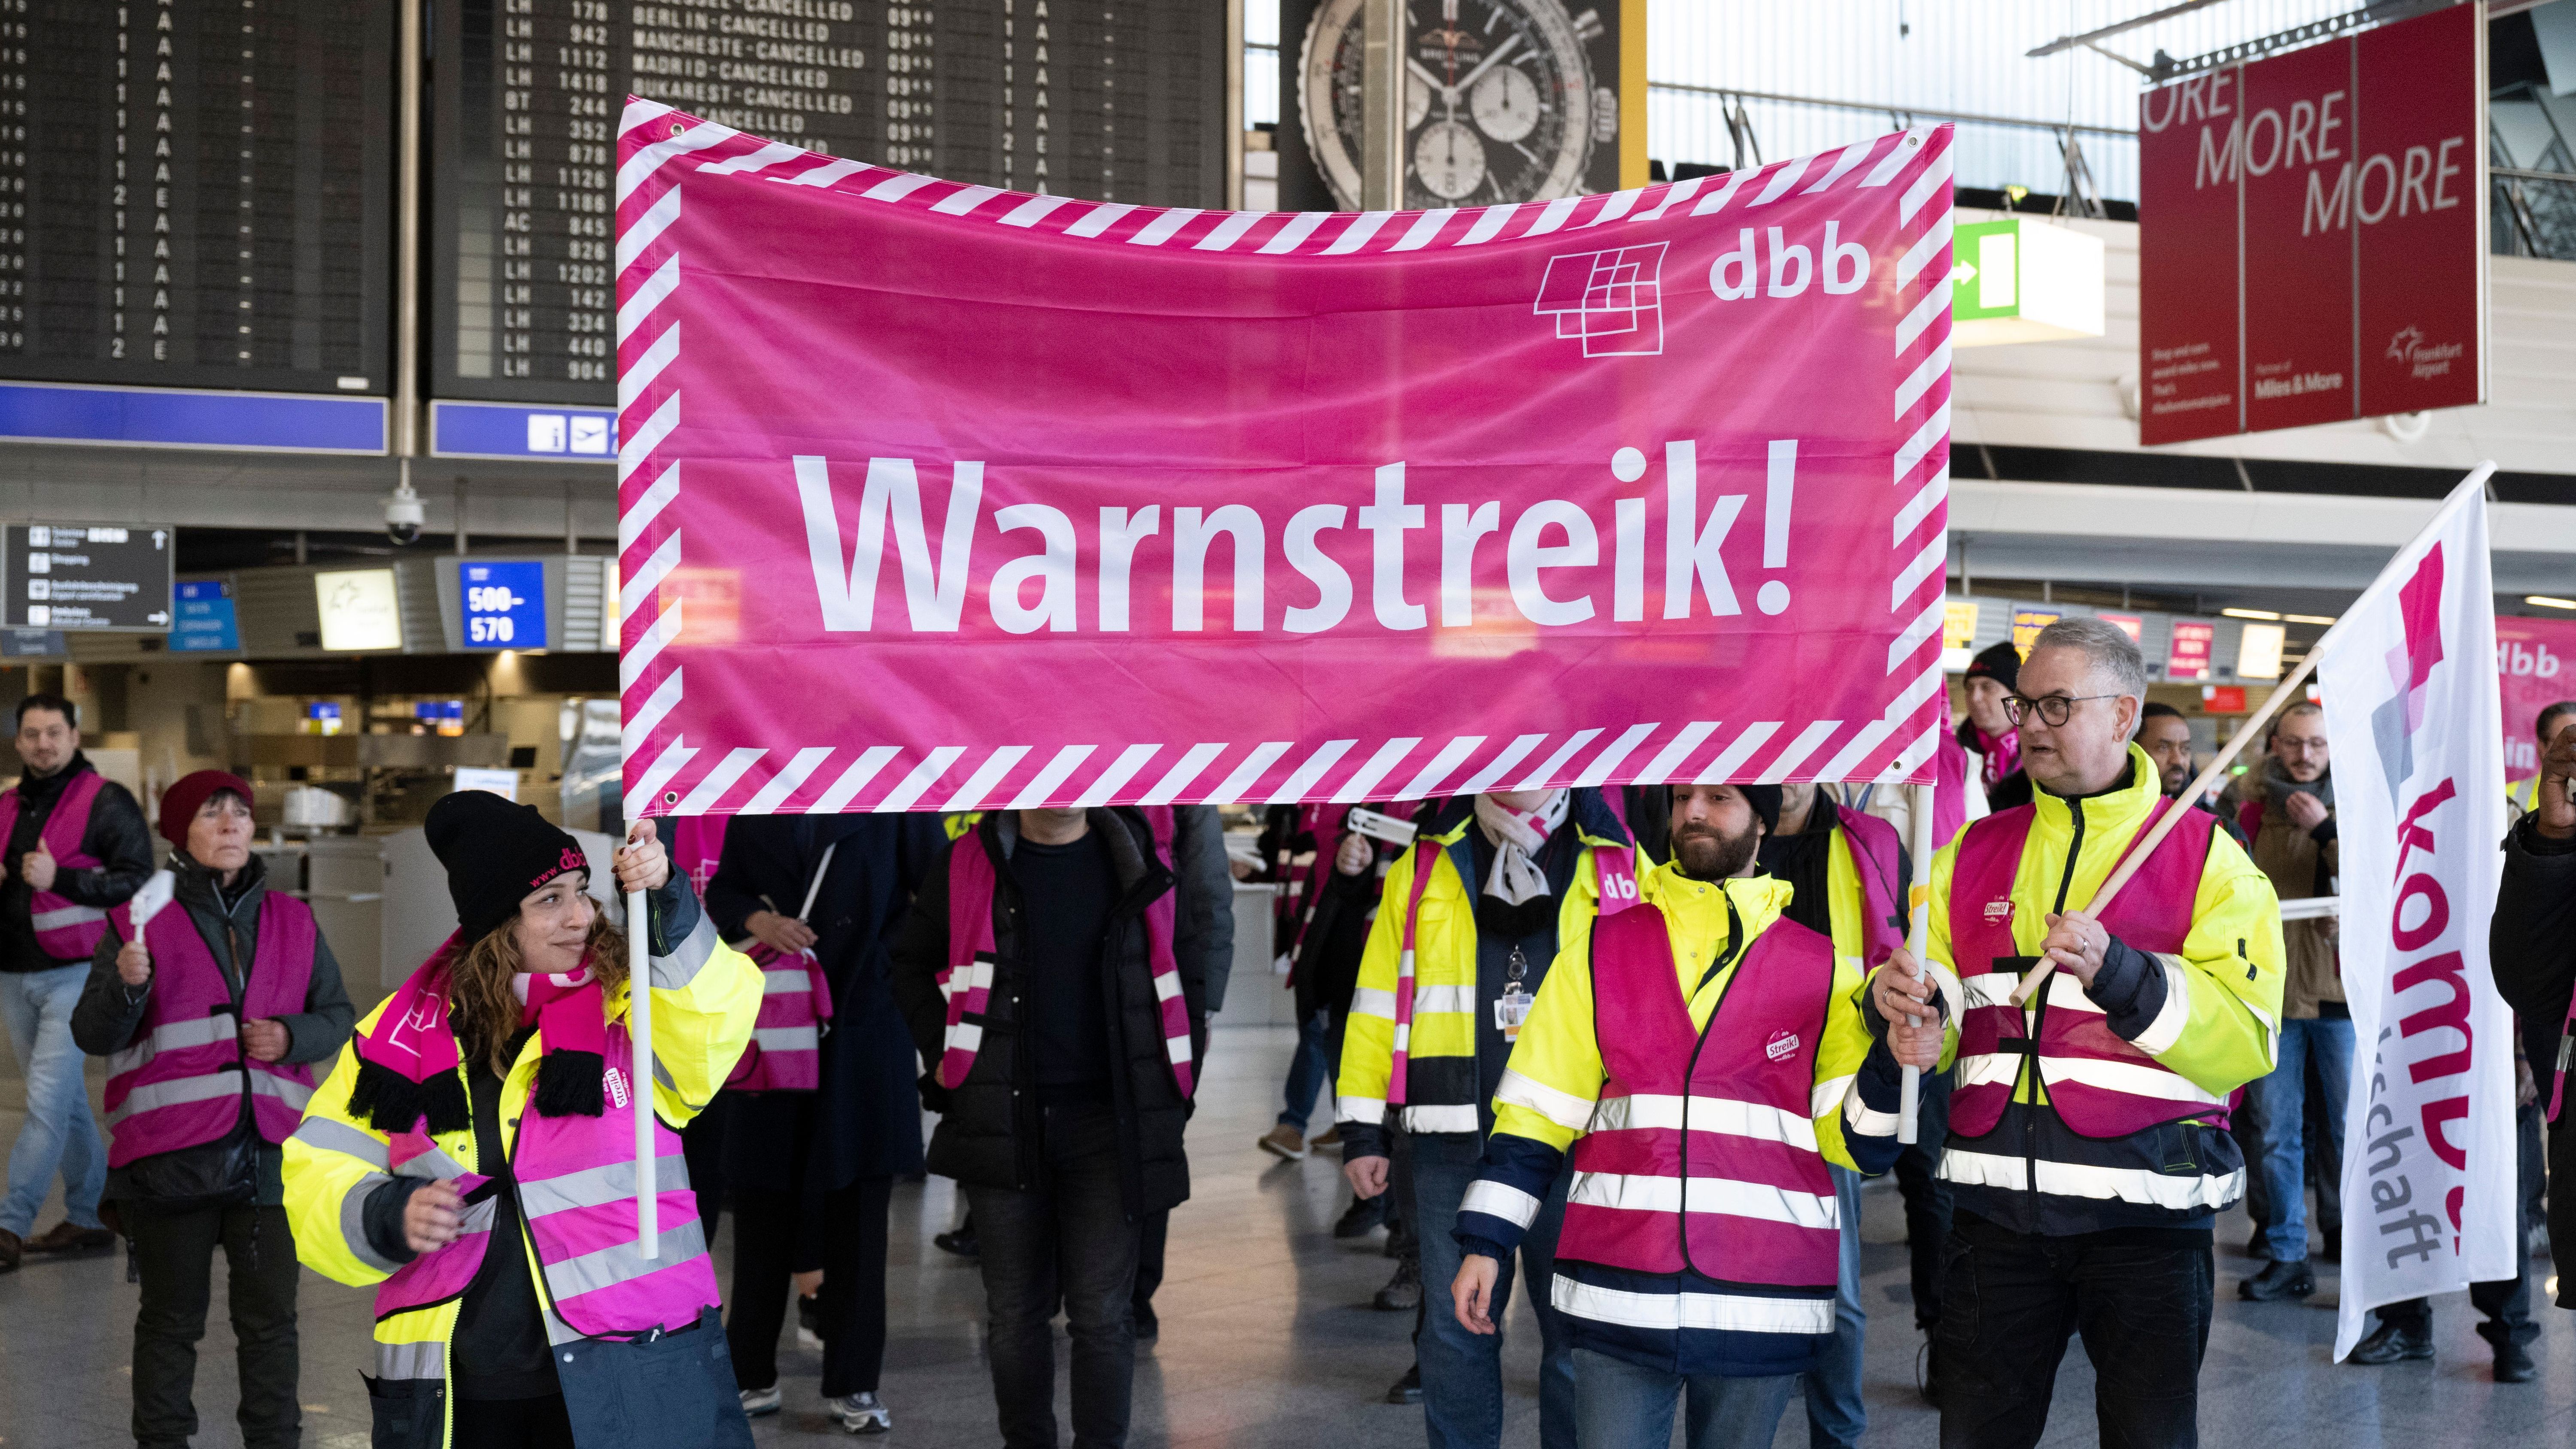 Frankfurt/Main: Streikende laufen mit Bannern durch das Terminal des Flughafens Frankfurt. Mit einem großangelegten bundesweiten Warnstreik haben die Gewerkschaften EVG und Verdi am Montag weite Teile des öffentlichen Verkehrs lahmgelegt. 